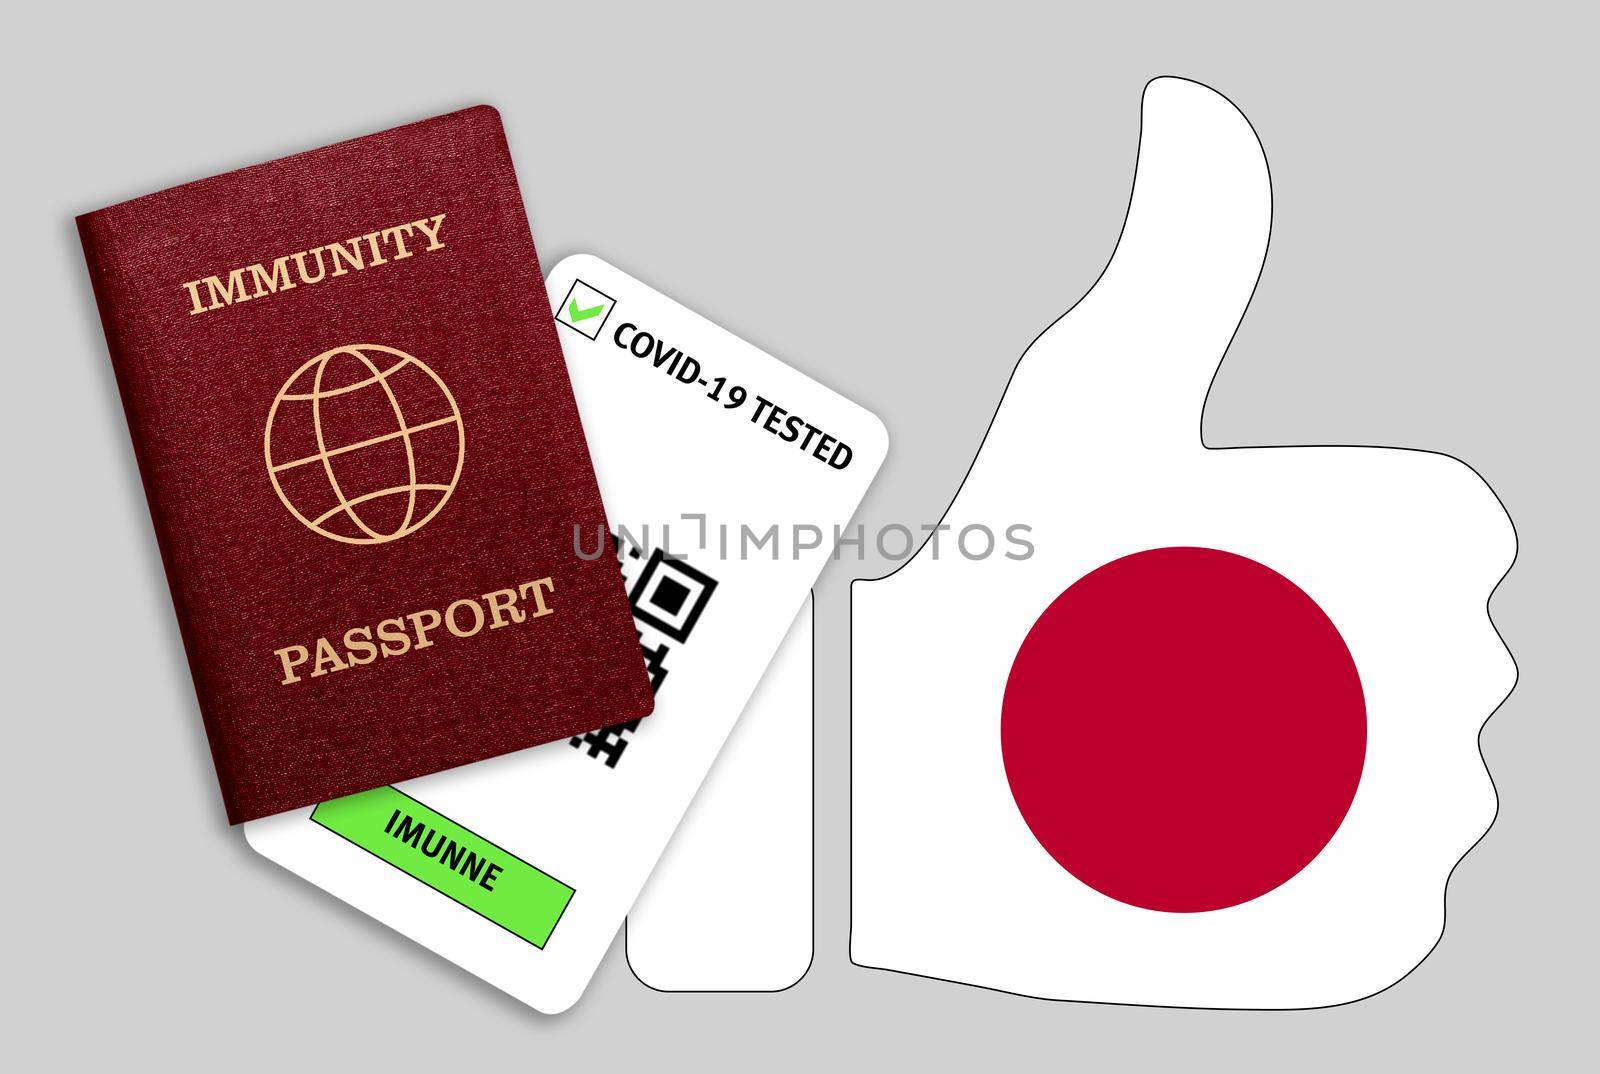 Immune passport and coronavirus test with thumb up with flag of Japan by galinasharapova